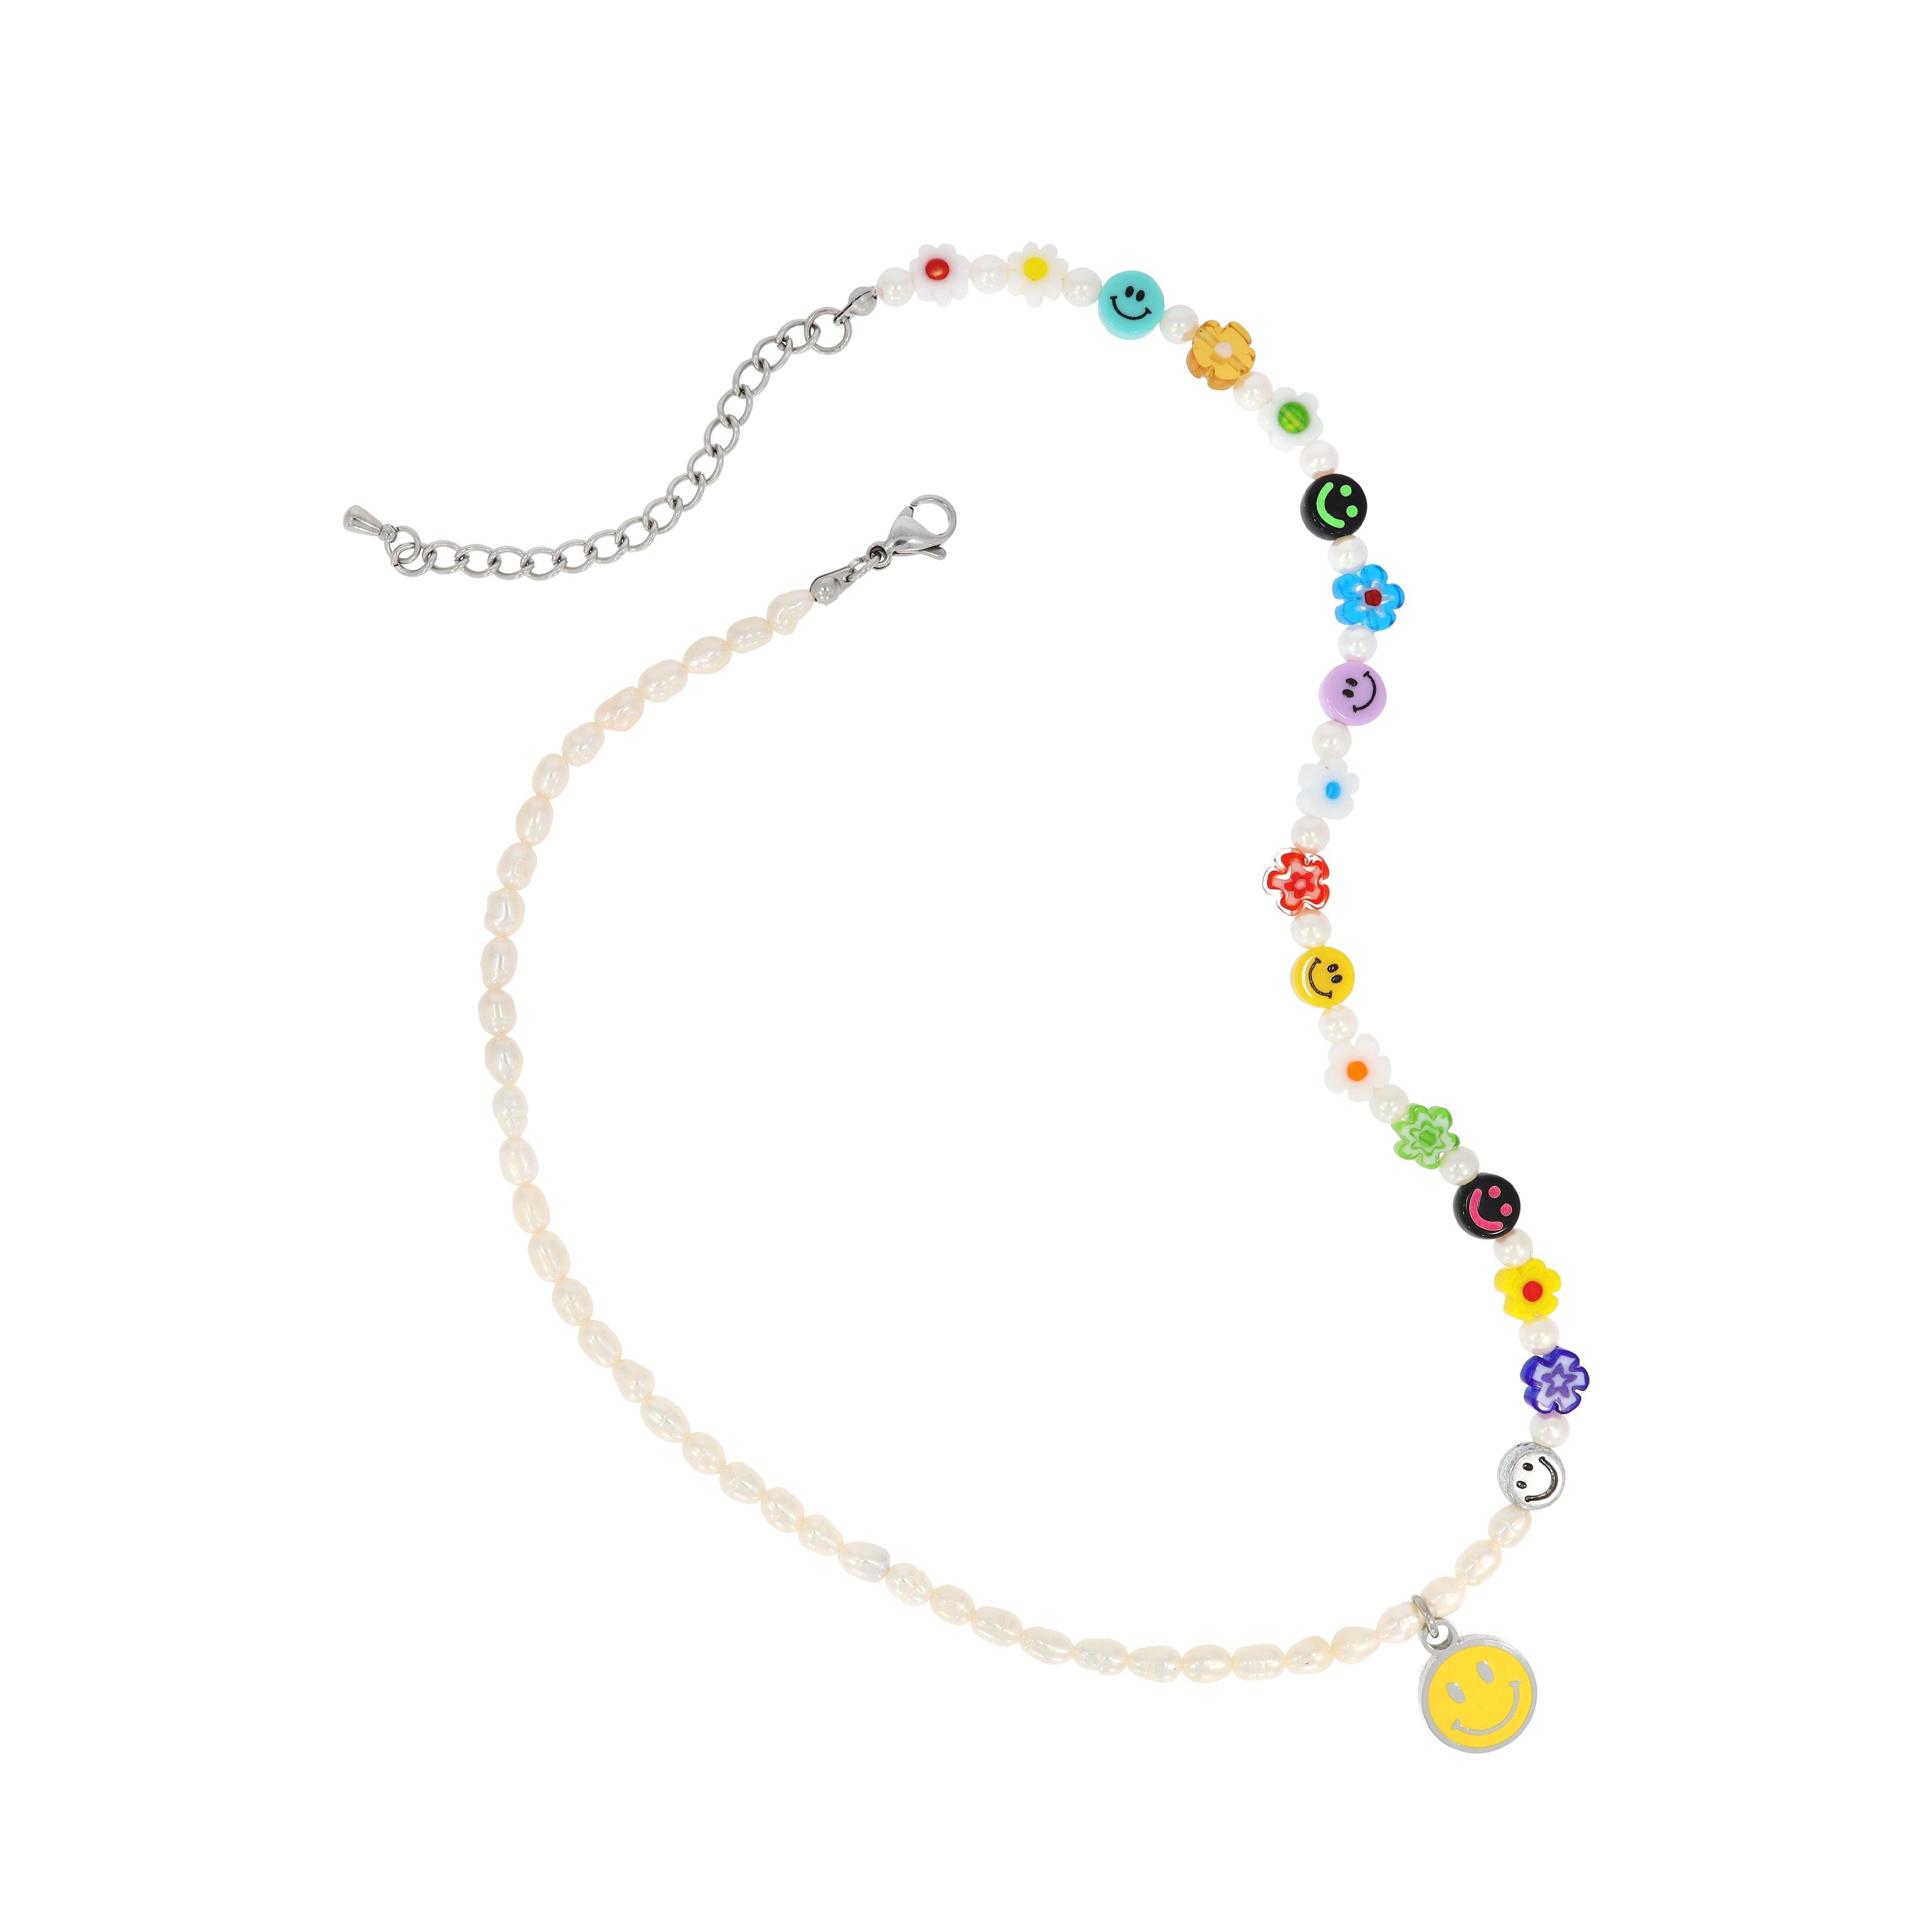 [送料無料]カラフルスマイル真珠ネックレス necklace STEEL EDITION 